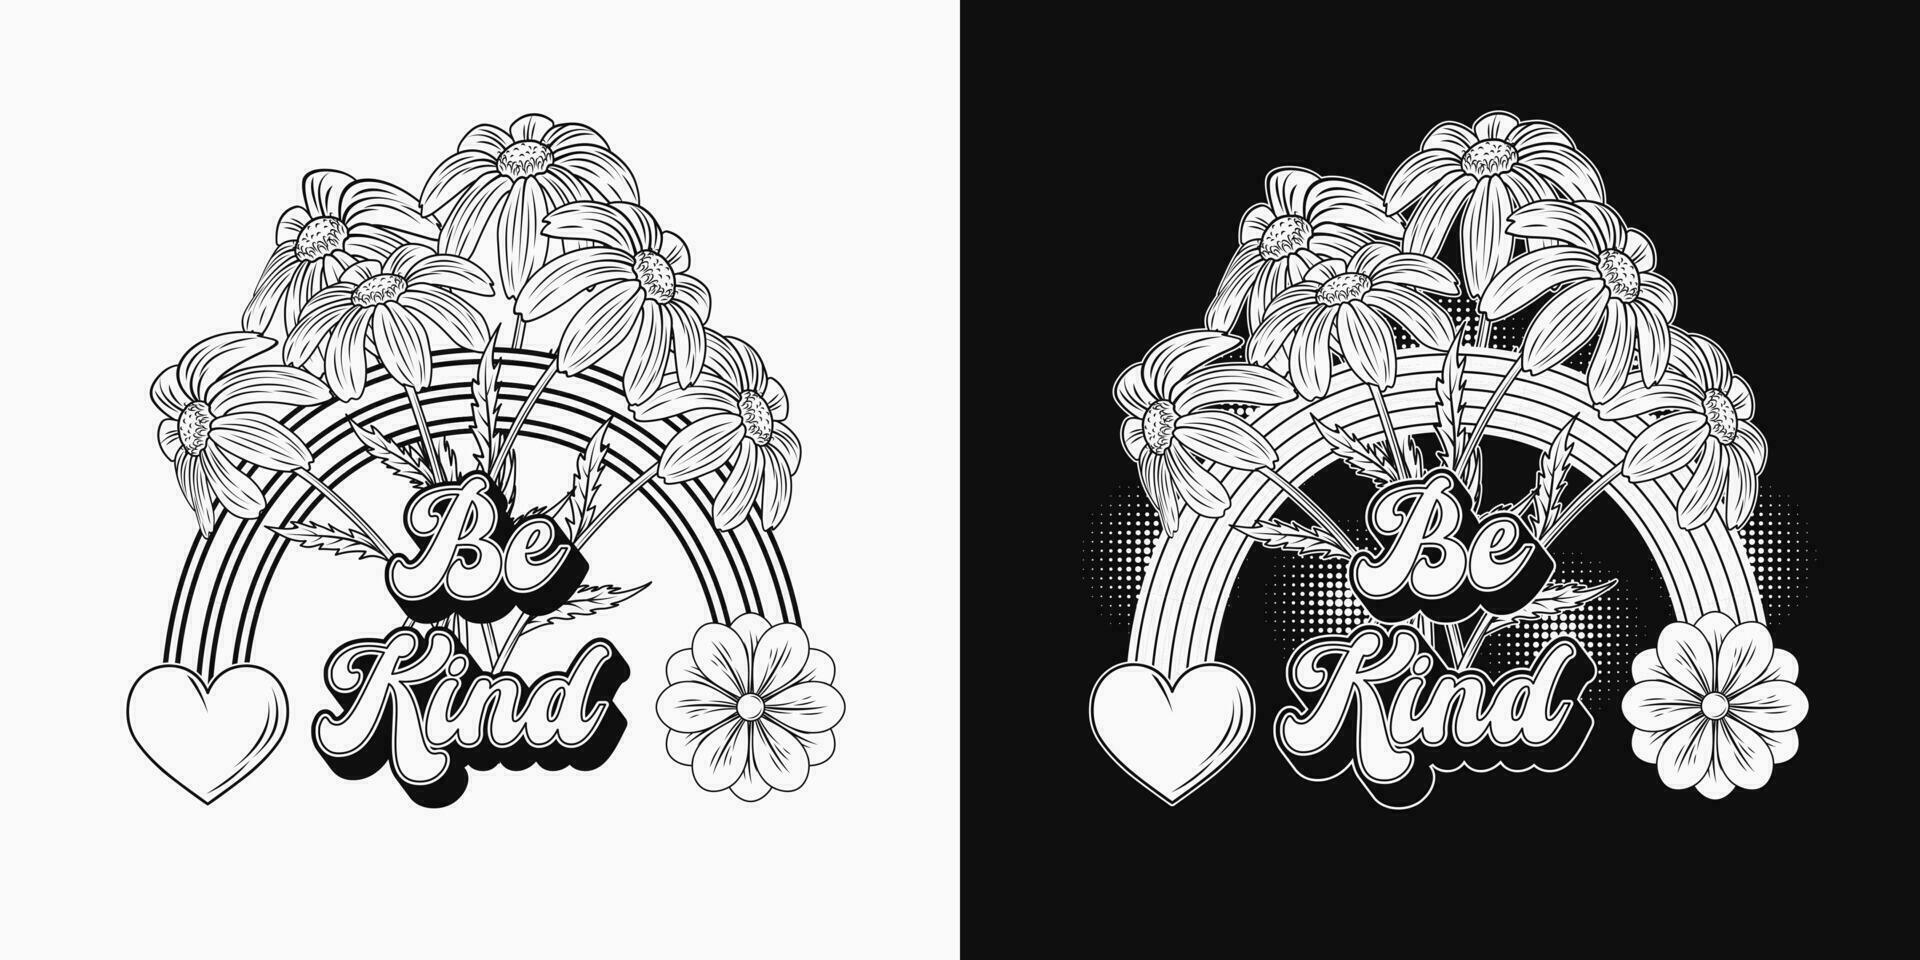 negro y blanco verano etiqueta con manzanilla ramo de flores , trama de semitonos formas maravilloso, hippie retro estilo. para ropa, vestir, camisetas, superficie decoración vector